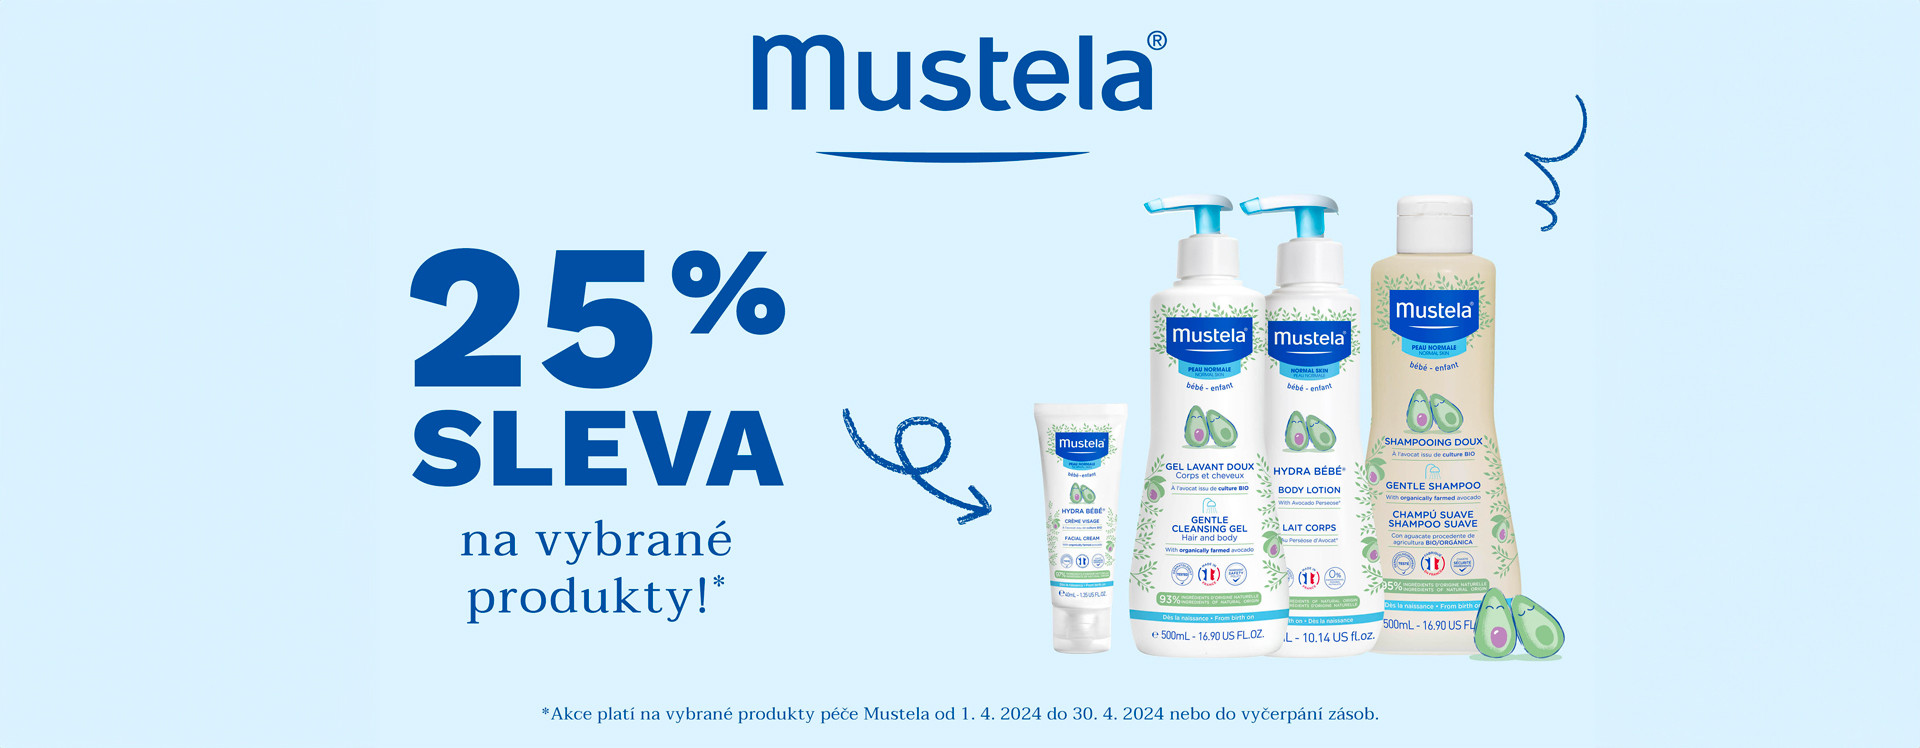 Onlinelekarna.cz | Mustela se slevou 25 %